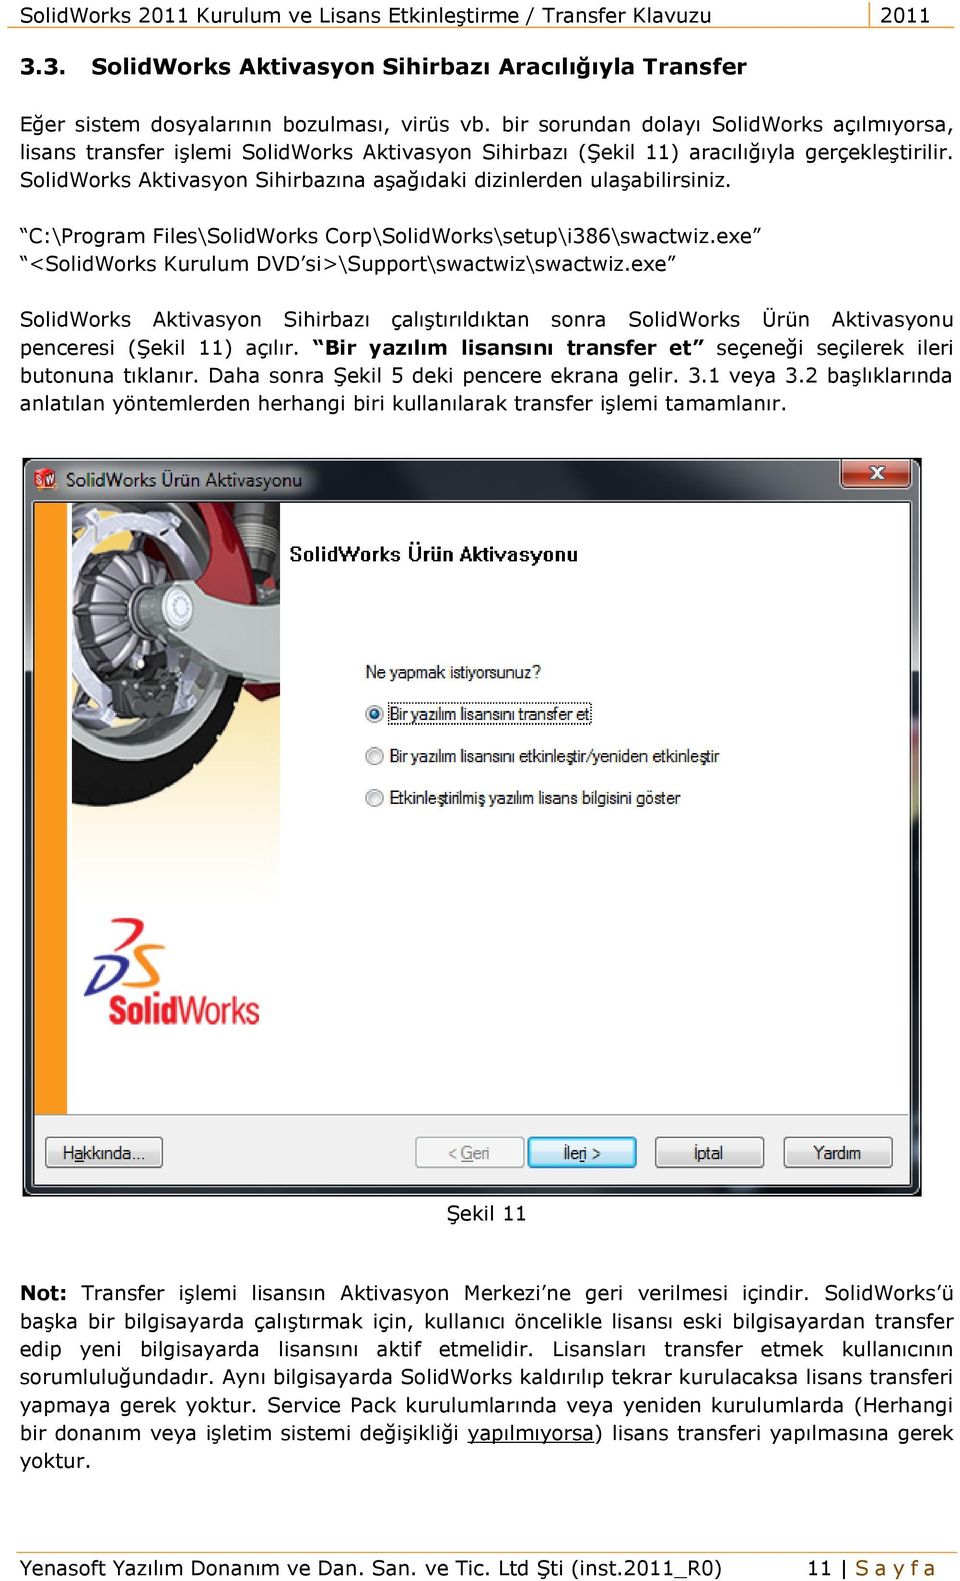 SolidWorks Aktivasyon Sihirbazına aşağıdaki dizinlerden ulaşabilirsiniz. C:\Program Files\SolidWorks Corp\SolidWorks\setup\i386\swactwiz.exe <SolidWorks Kurulum DVD si>\support\swactwiz\swactwiz.